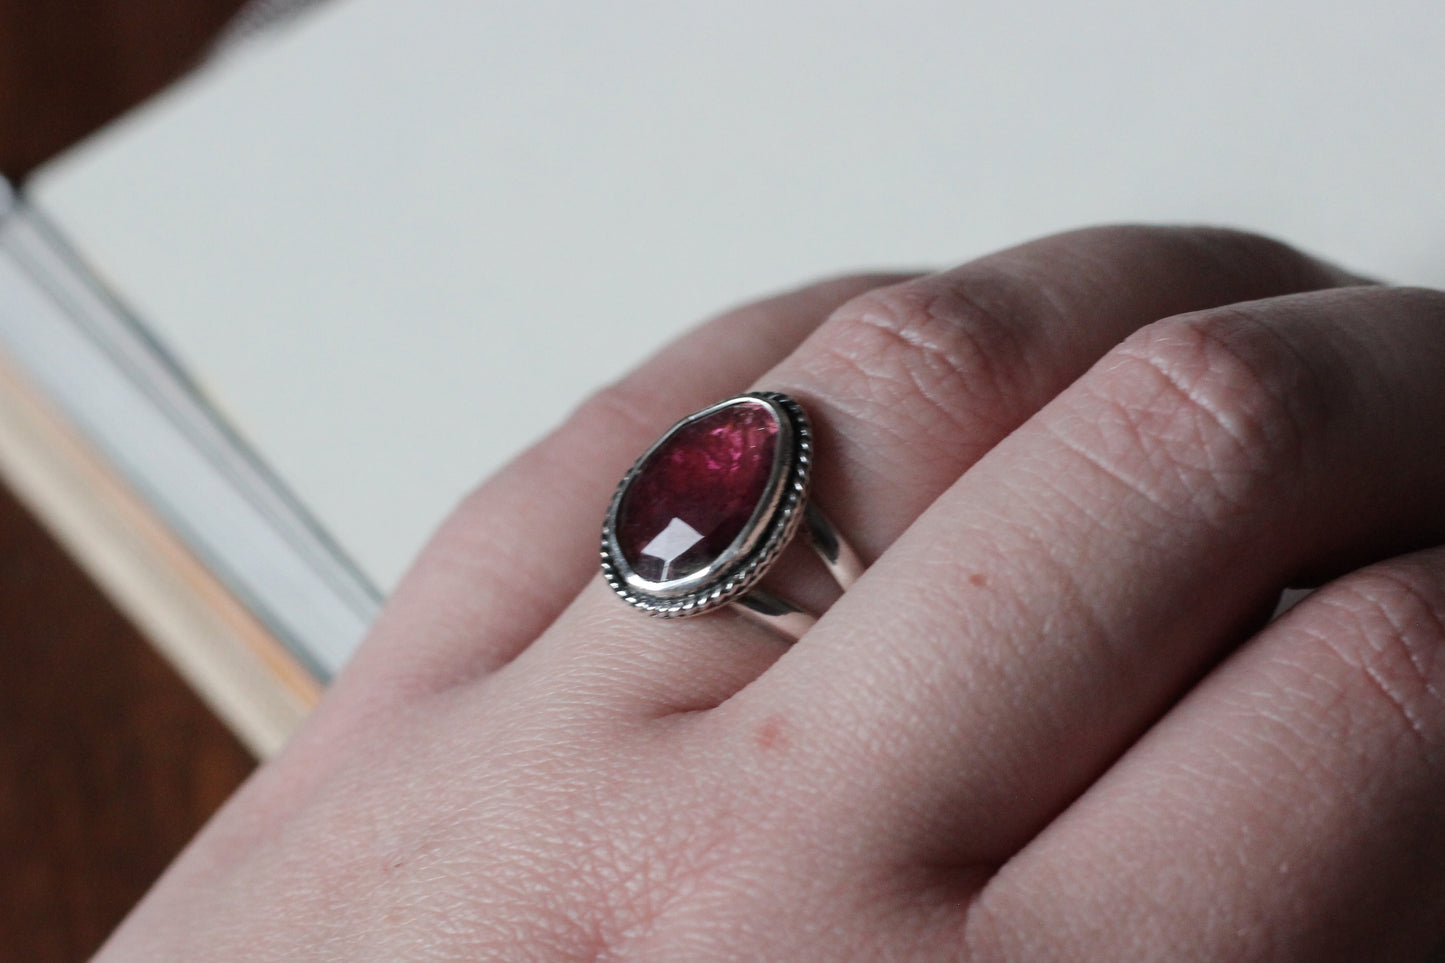 Pink Tourmaline Ring // Size 9